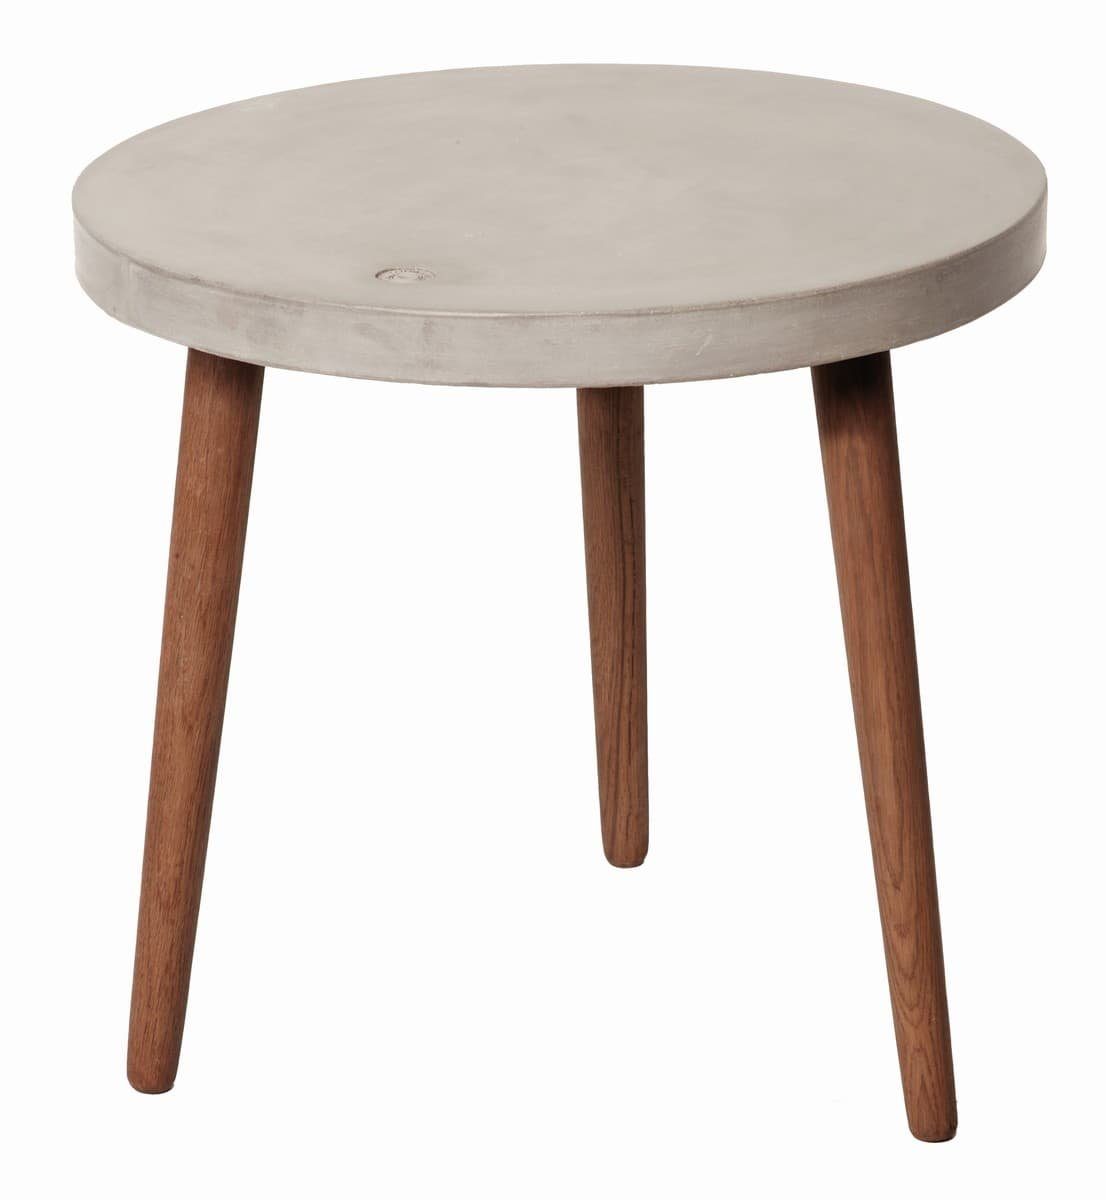 60 Couchtisch Beine cm Tischplatte TOM x TAILOR farbig Beton grau, Nussbaum 09984-13 60